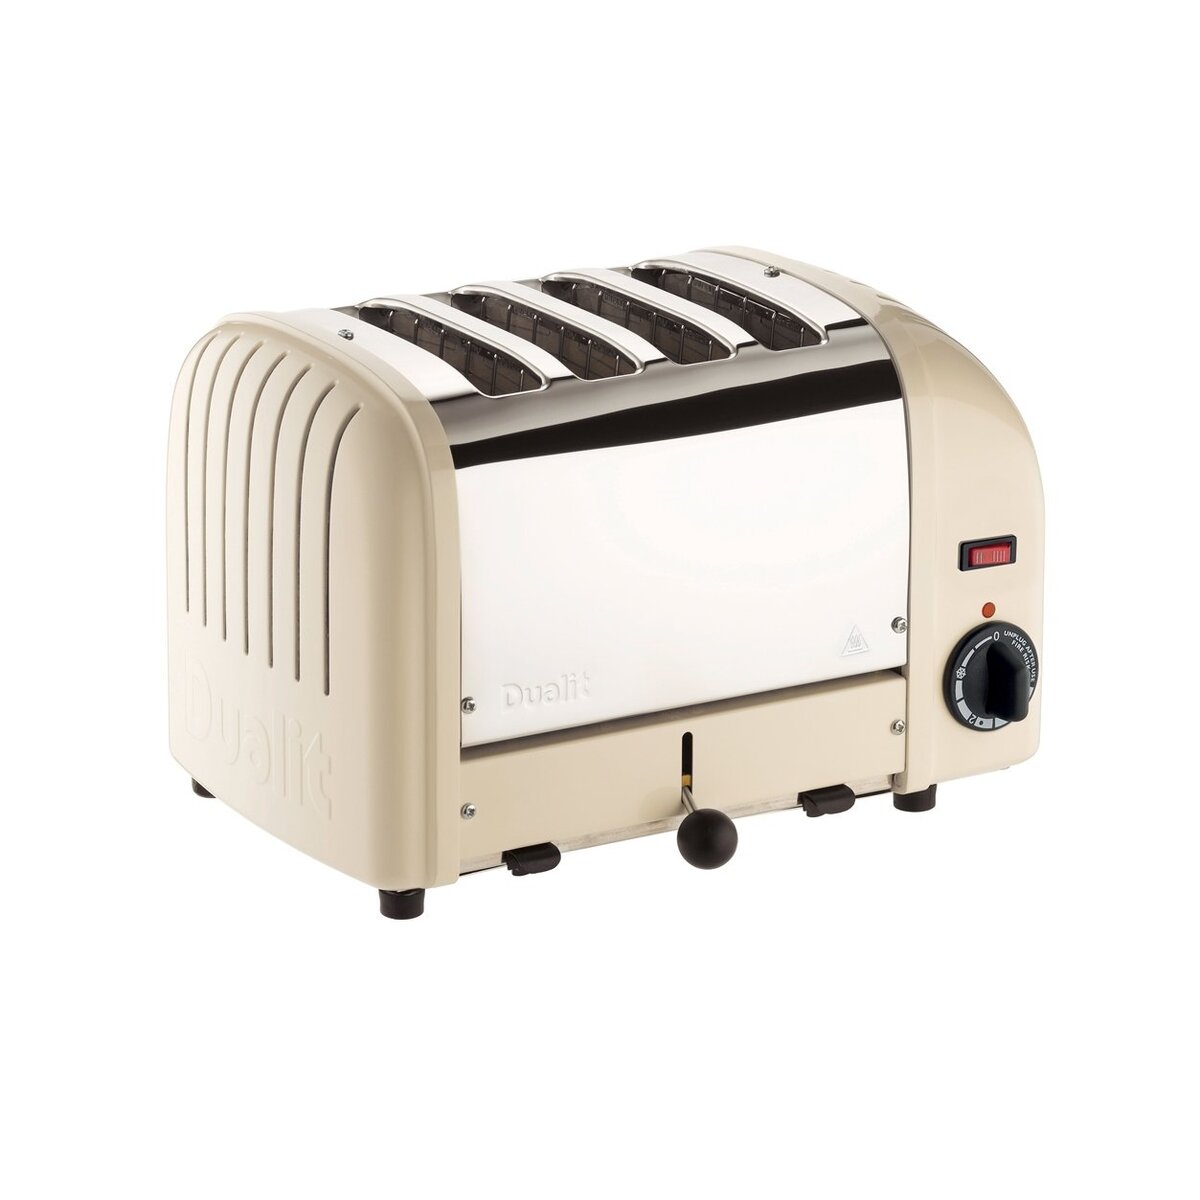 Dualit 40354 Classic Vario 4 Slot Toaster, Cream